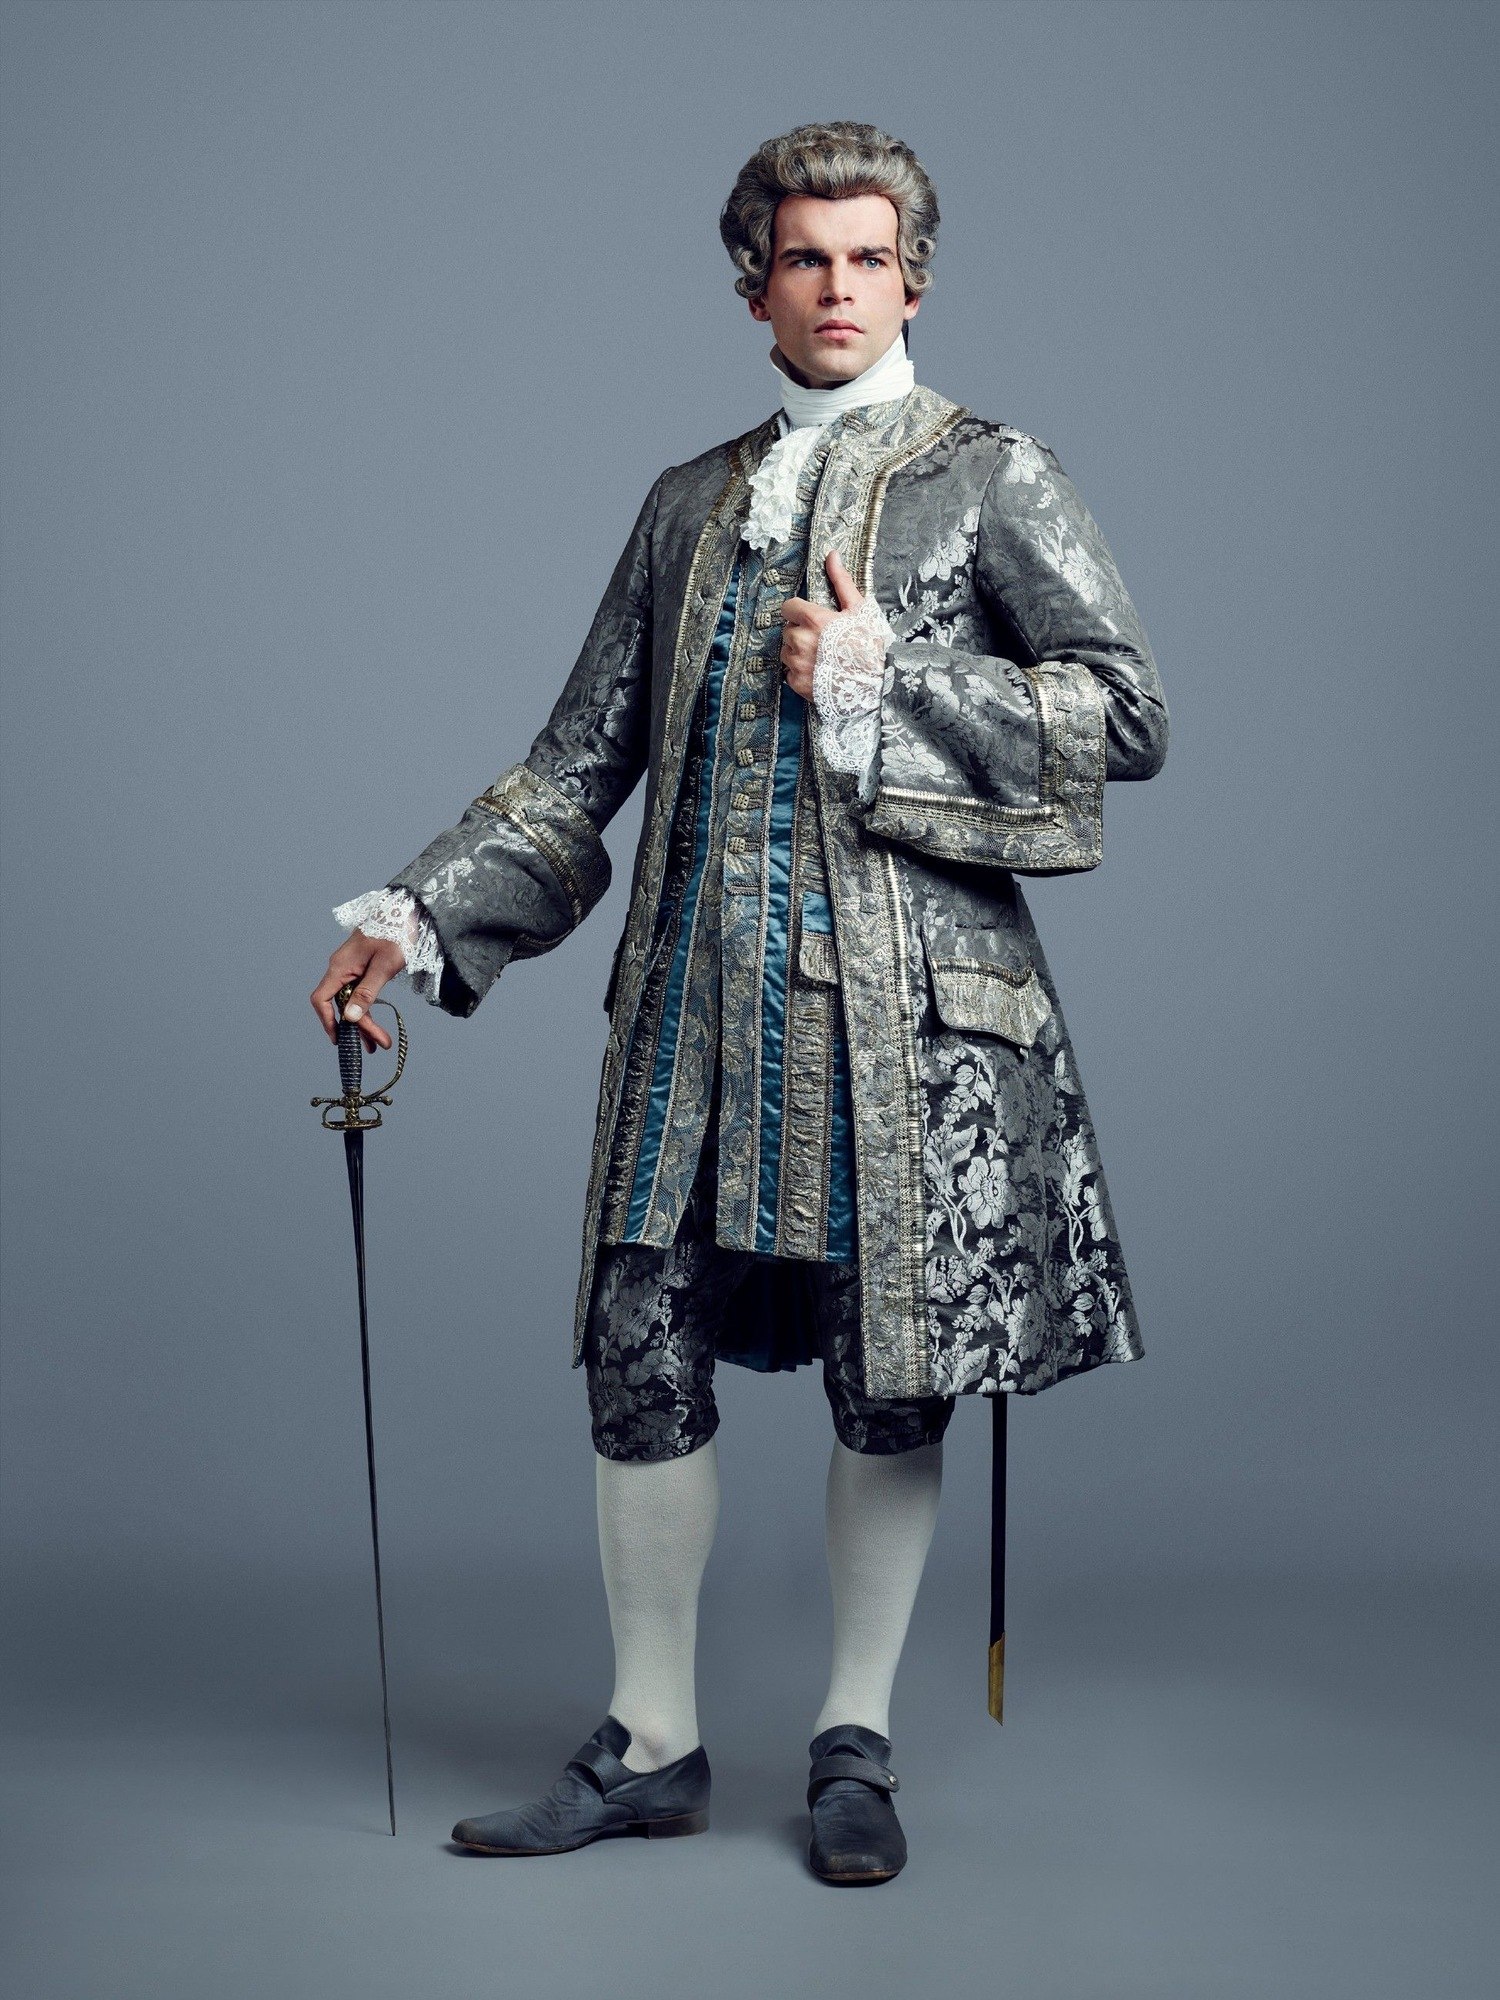 Фотографии в костюмах 18 века